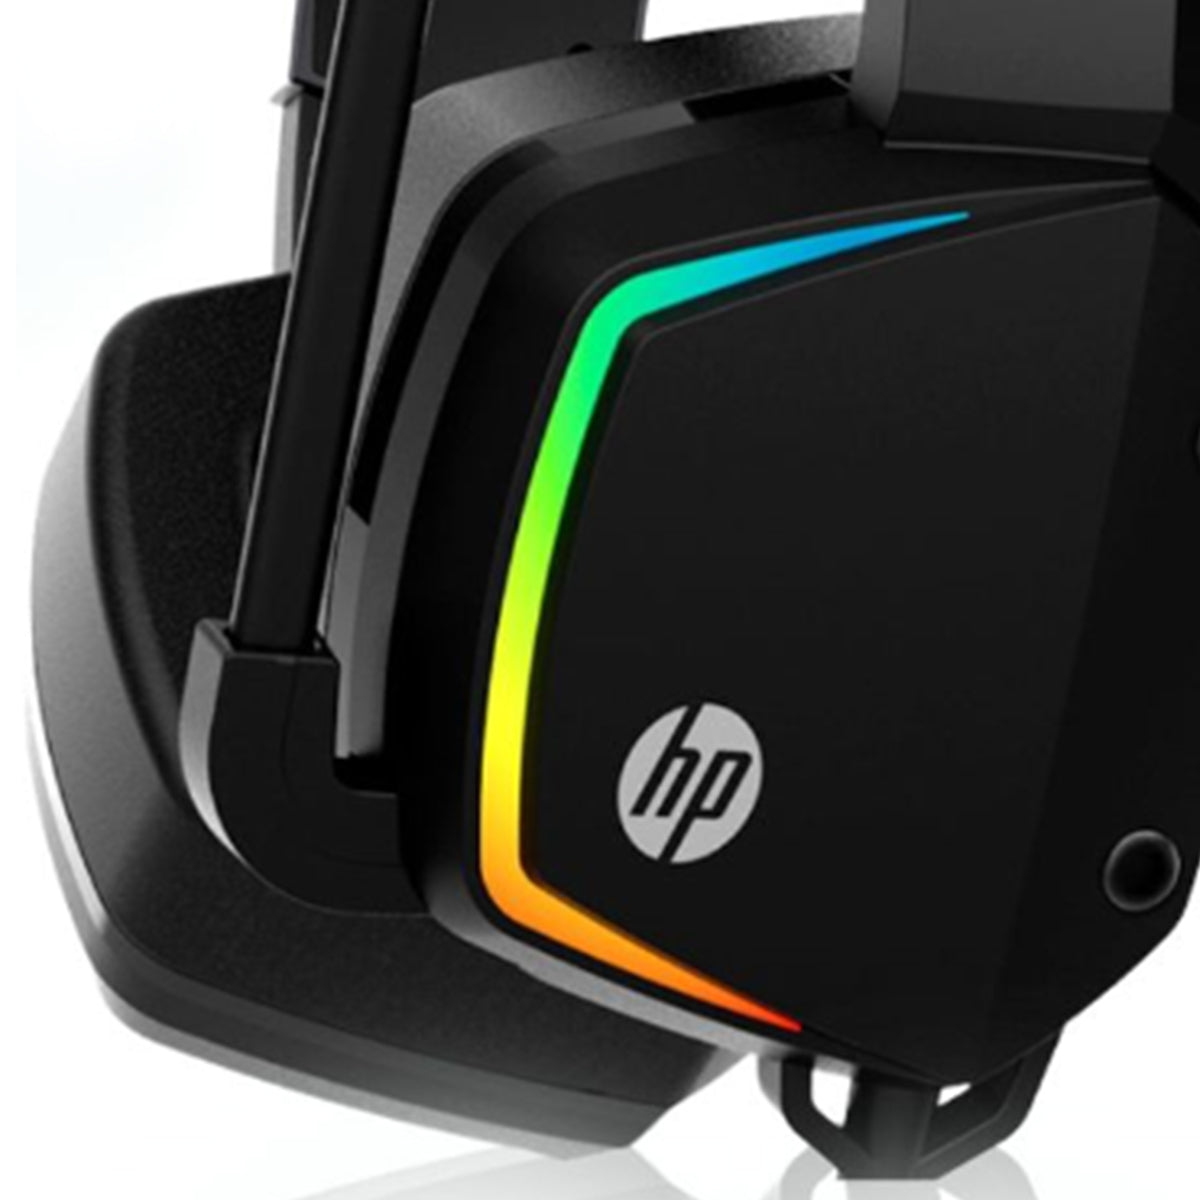 HP auriculares para juegos H320 - HP gaming headset H320